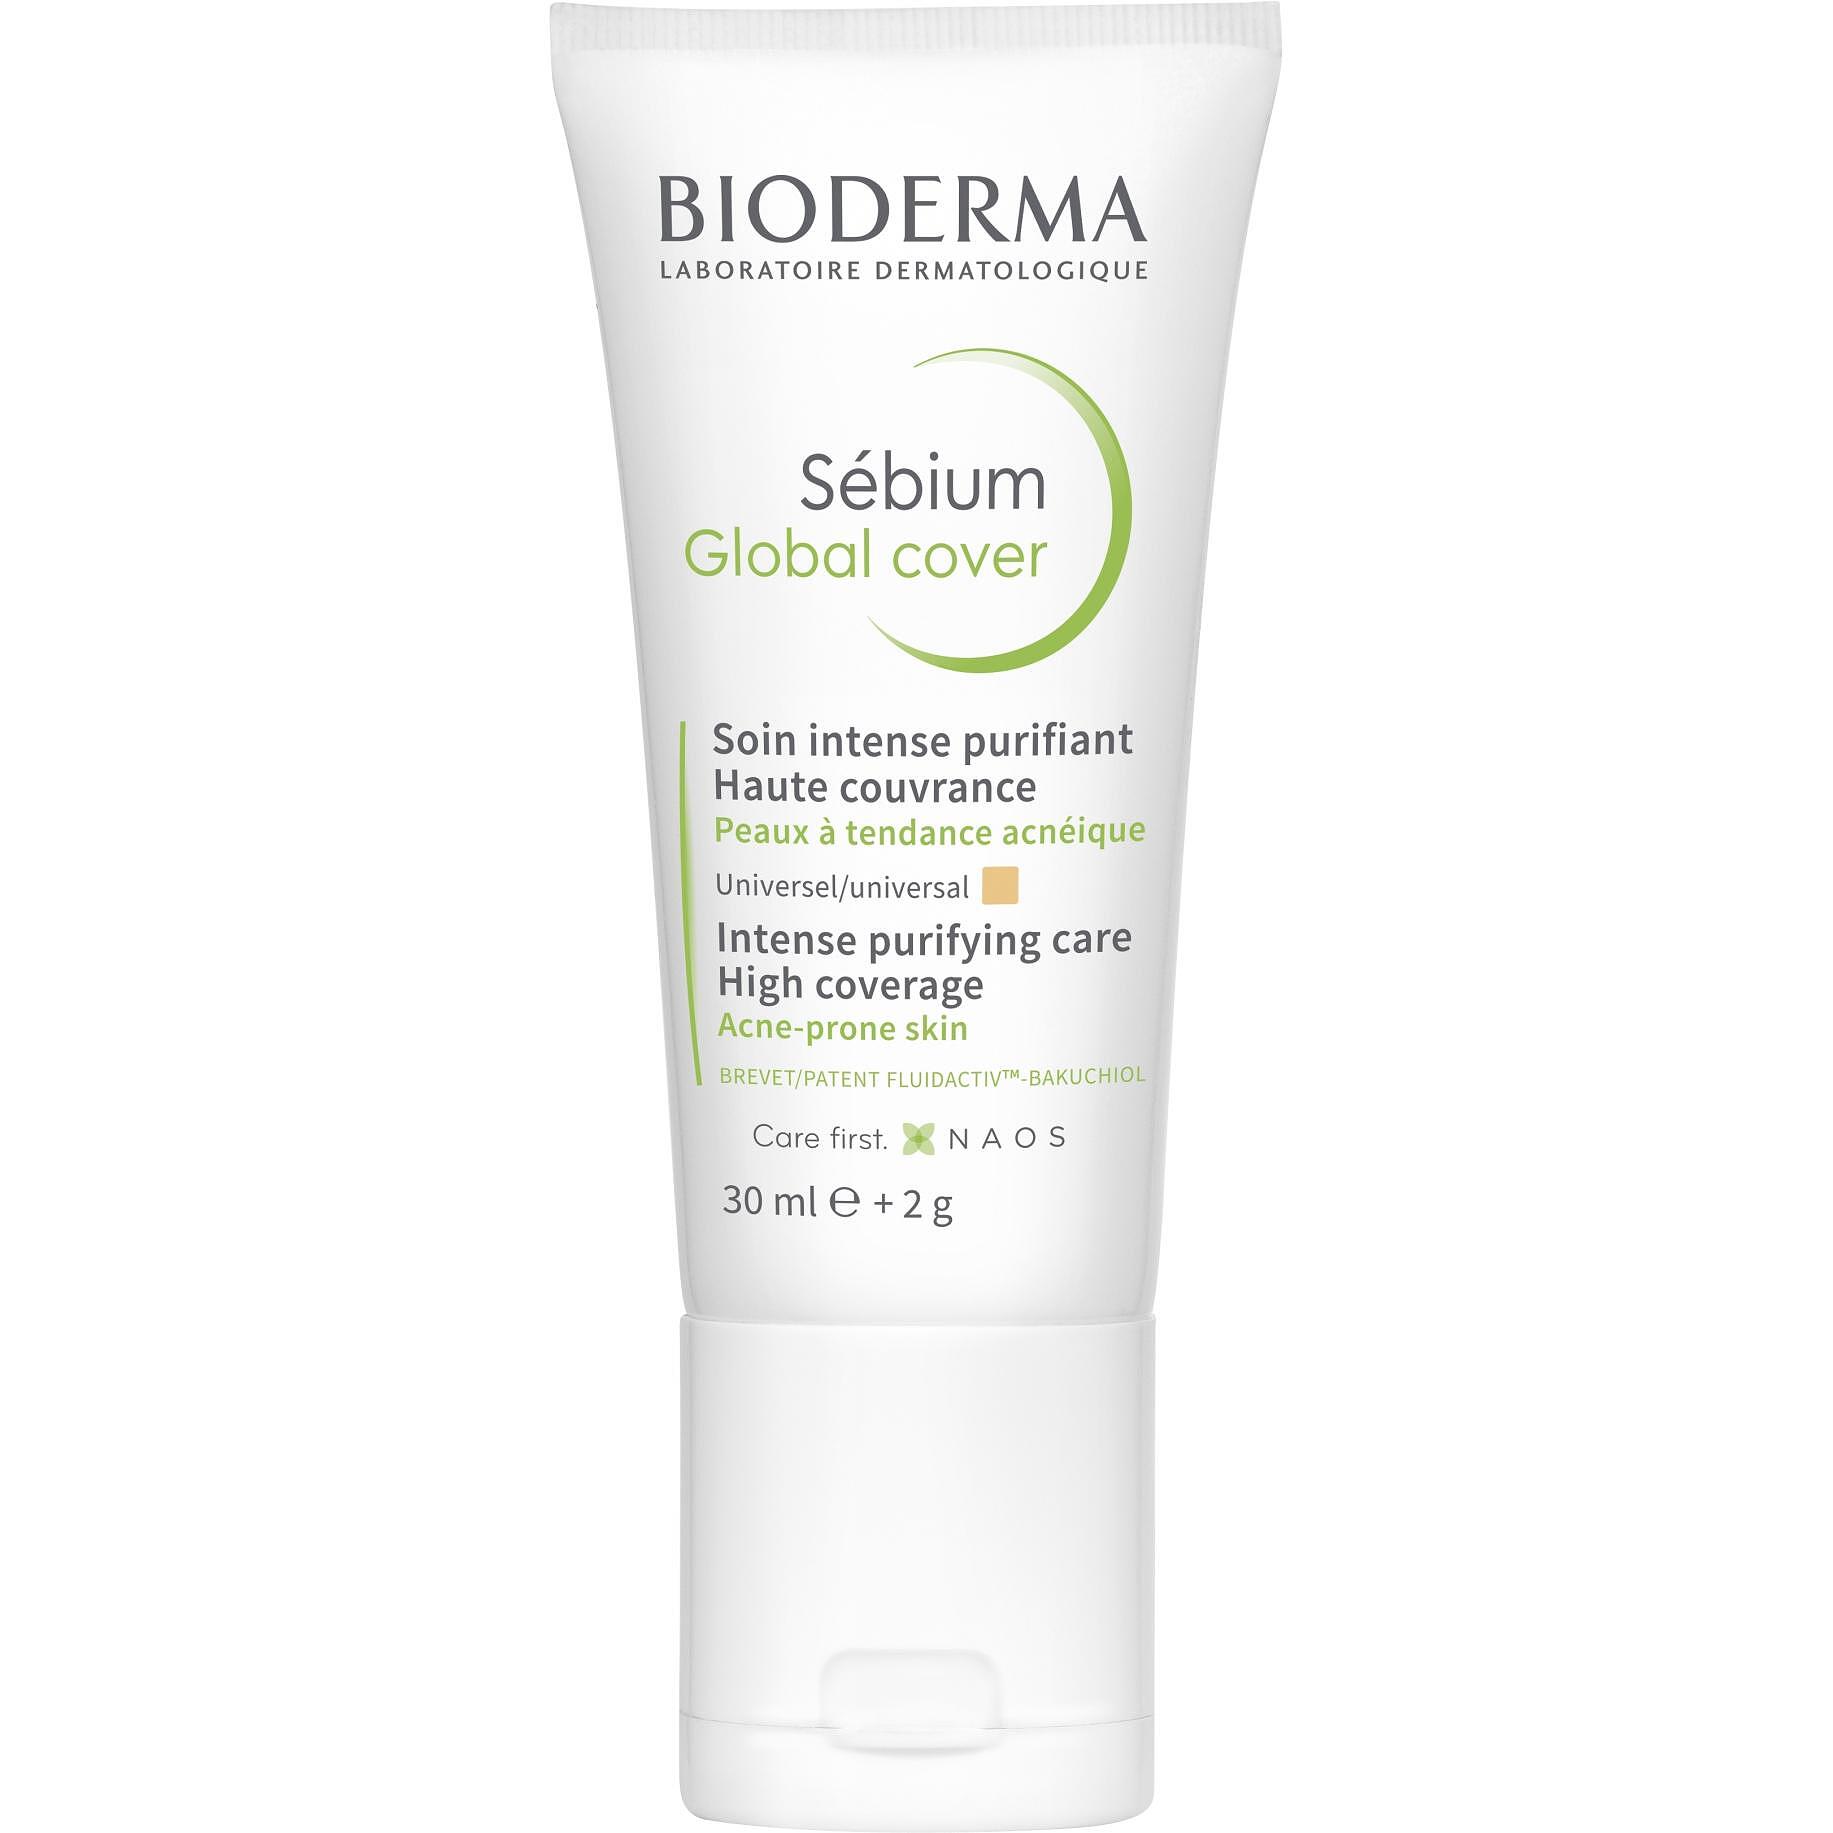 Bioderma Sebium Global Cover крем за кожа склонна към акне, 30 мл | Биодерма, Себиум